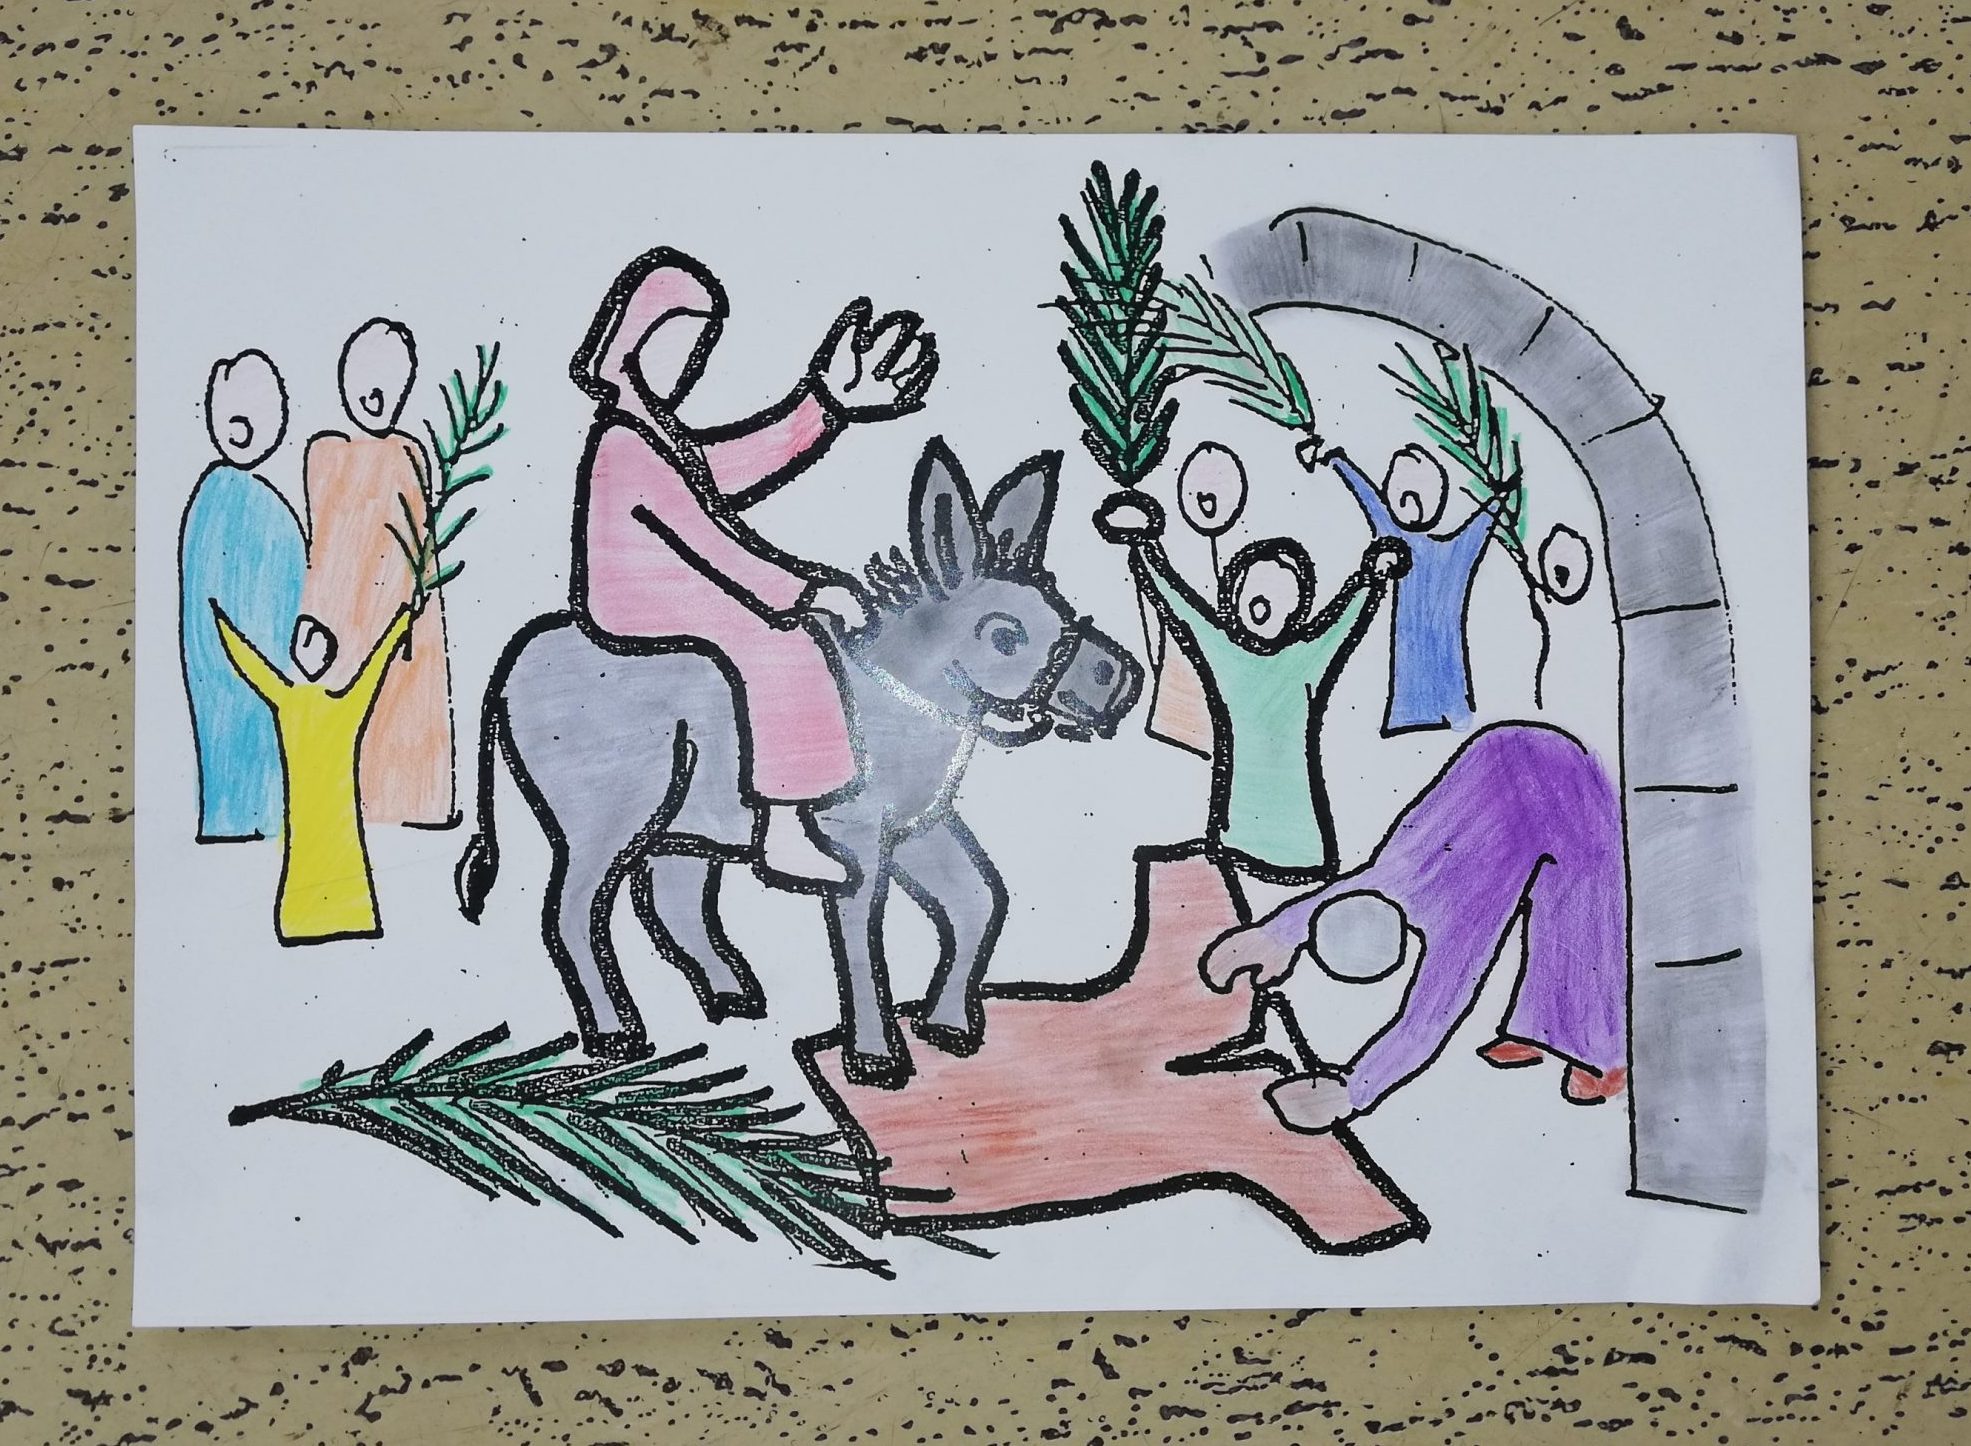 1. Jesus zieht ein in Jerusalem